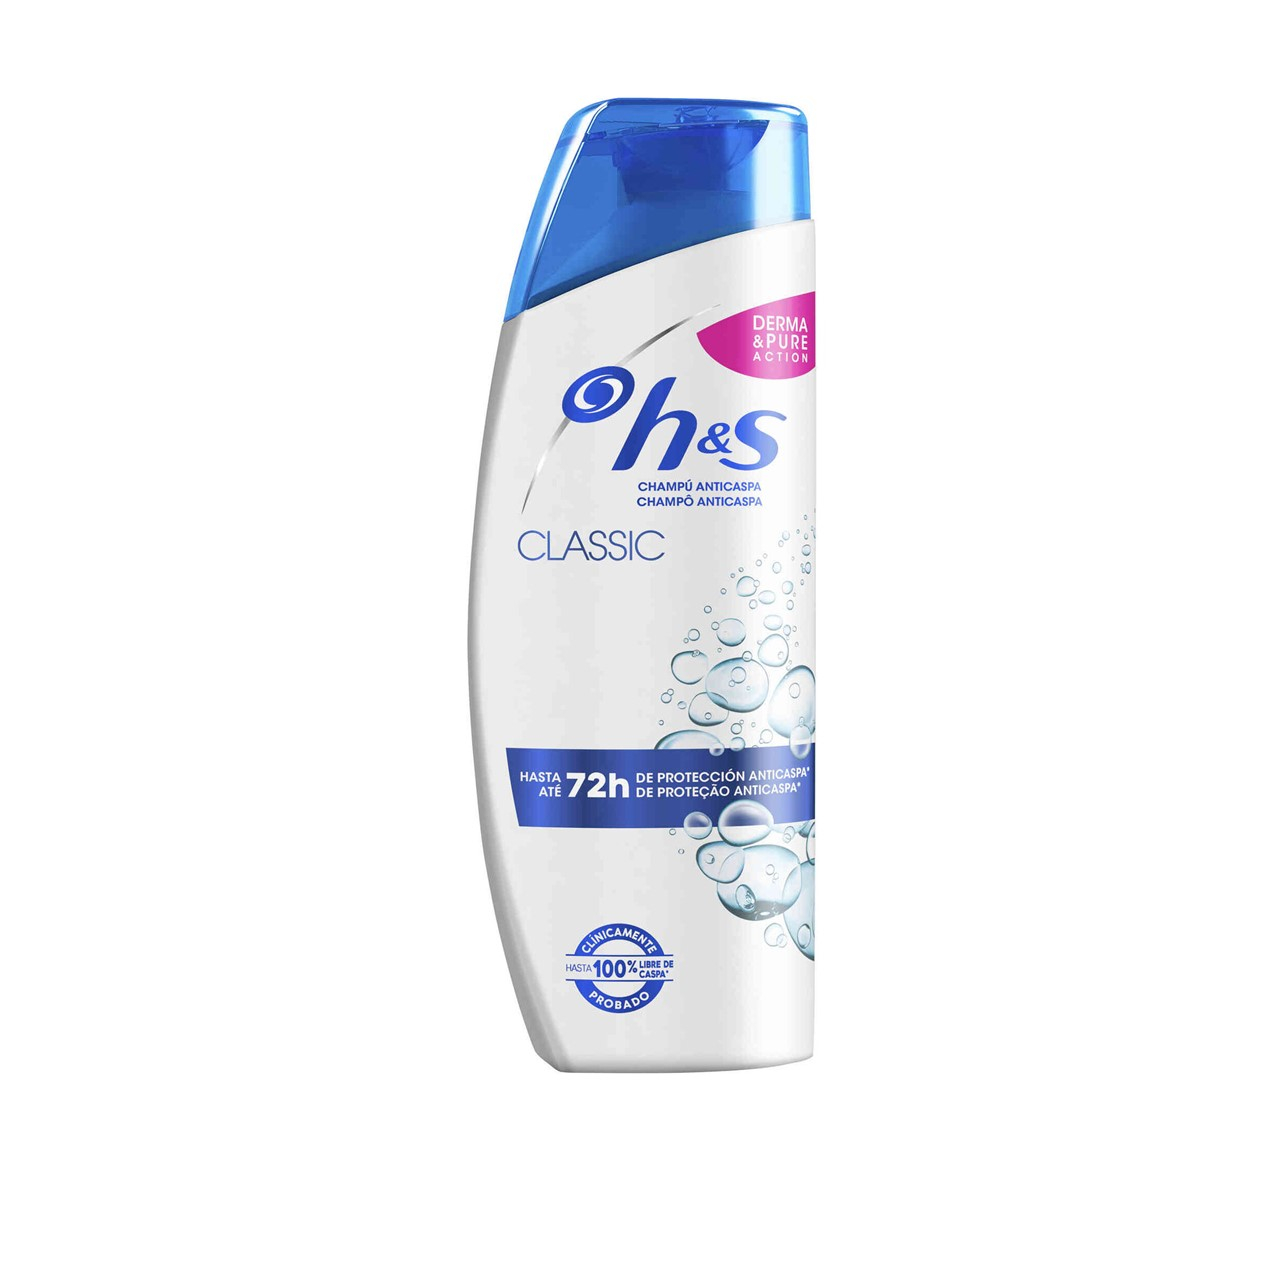 H&S Classic Clean Shampoo 650ml (21.98fl oz)